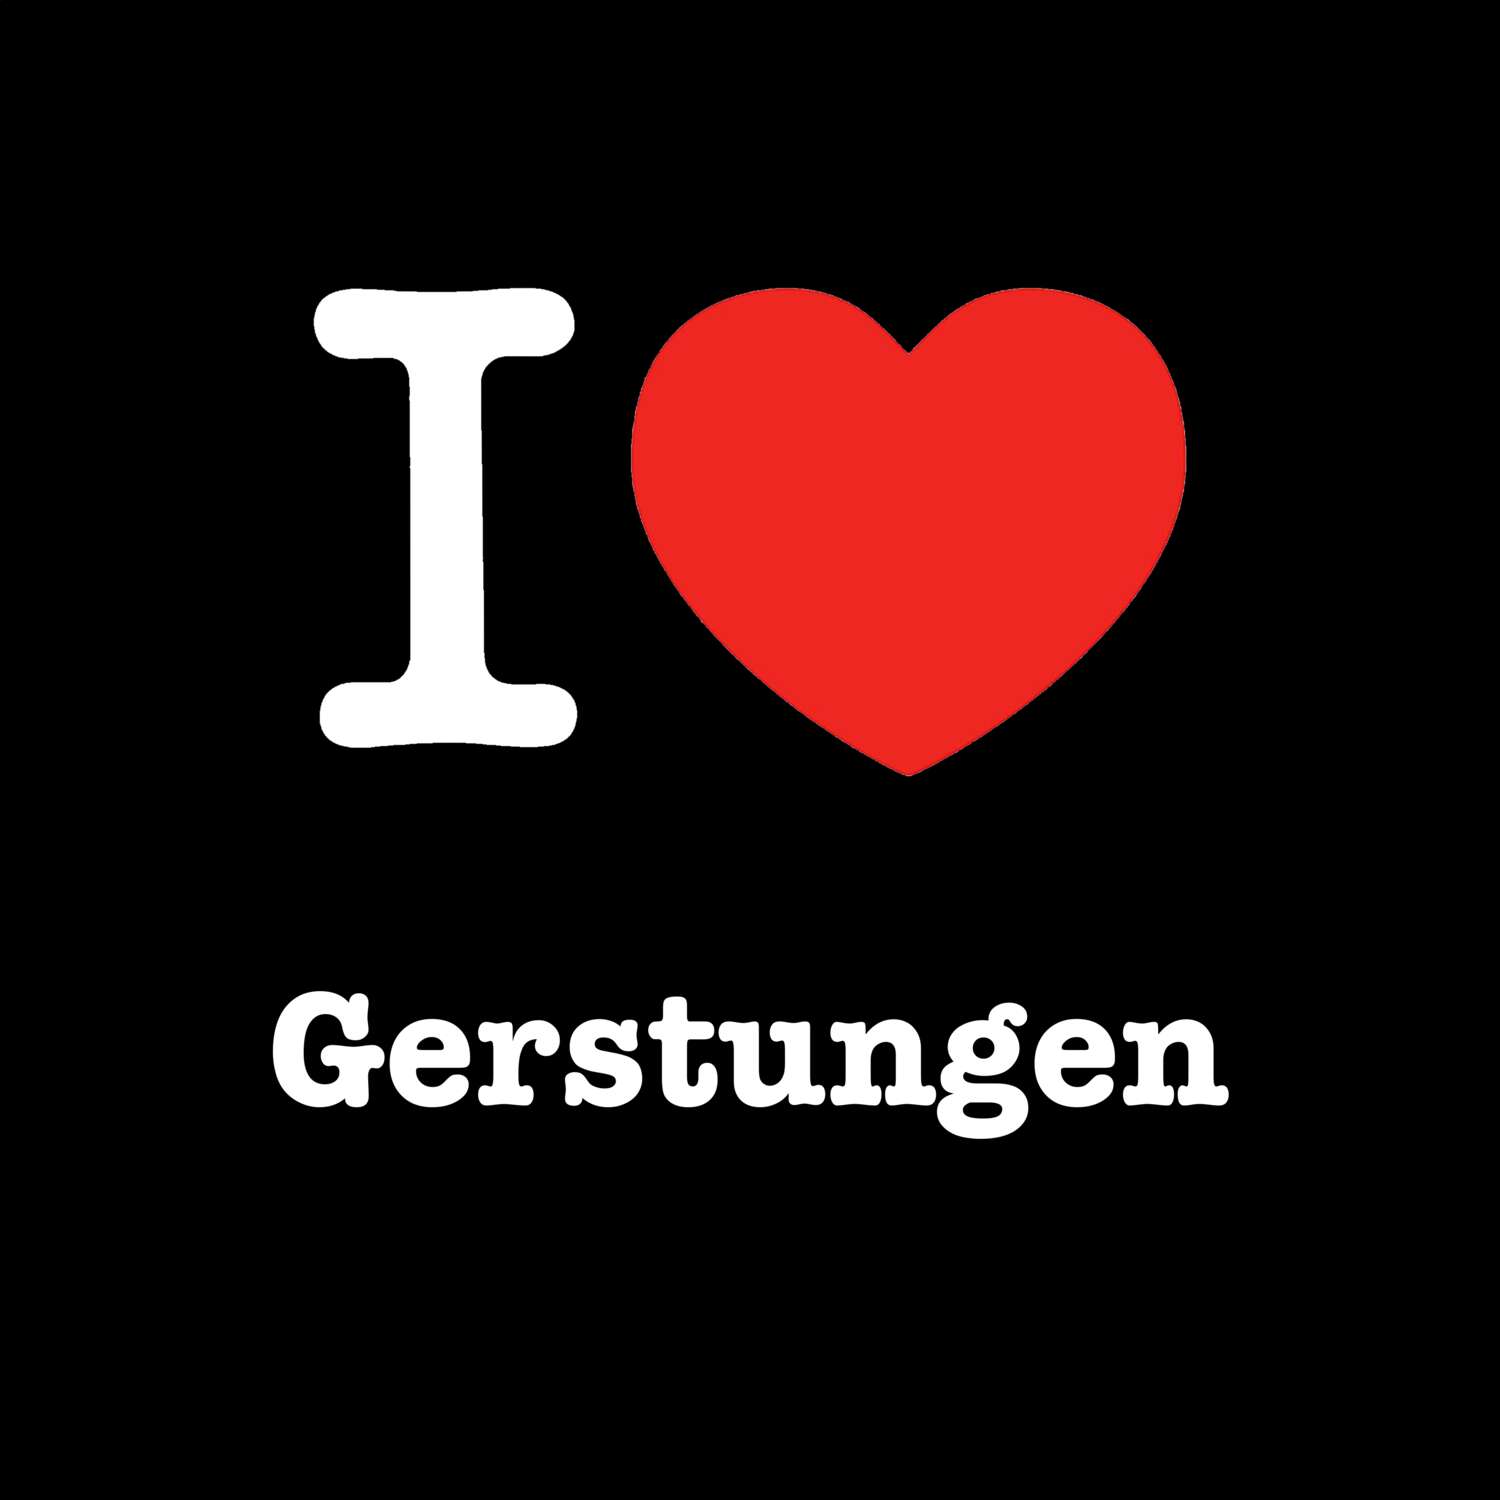 Gerstungen T-Shirt »I love«